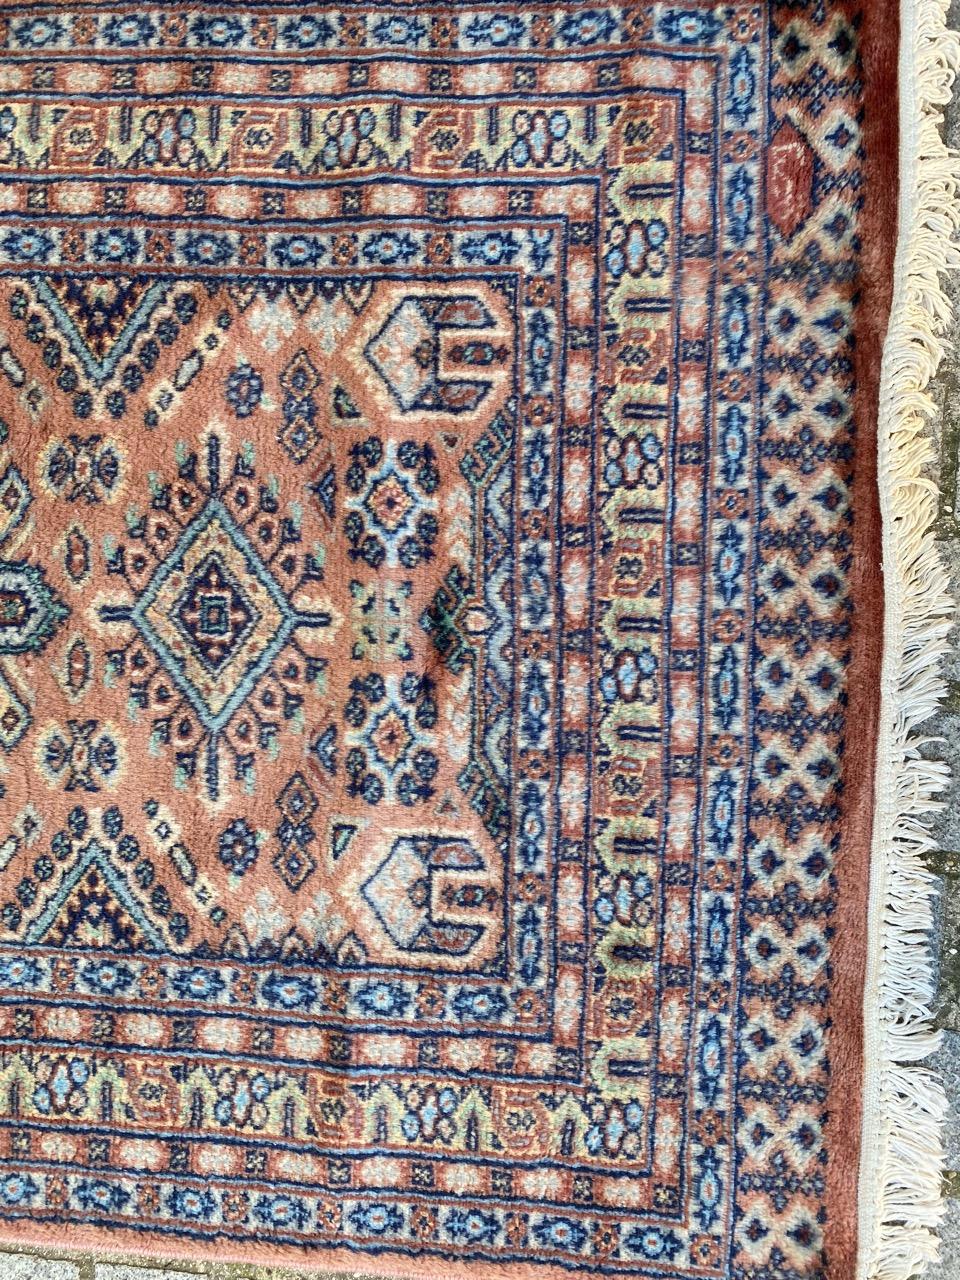 Schöner Teppich aus der Mitte des Jahrhunderts mit schönem geometrischem Muster und schönen Farben, komplett handgeknüpft mit Wollsamt auf Baumwollbasis.

✨✨✨
